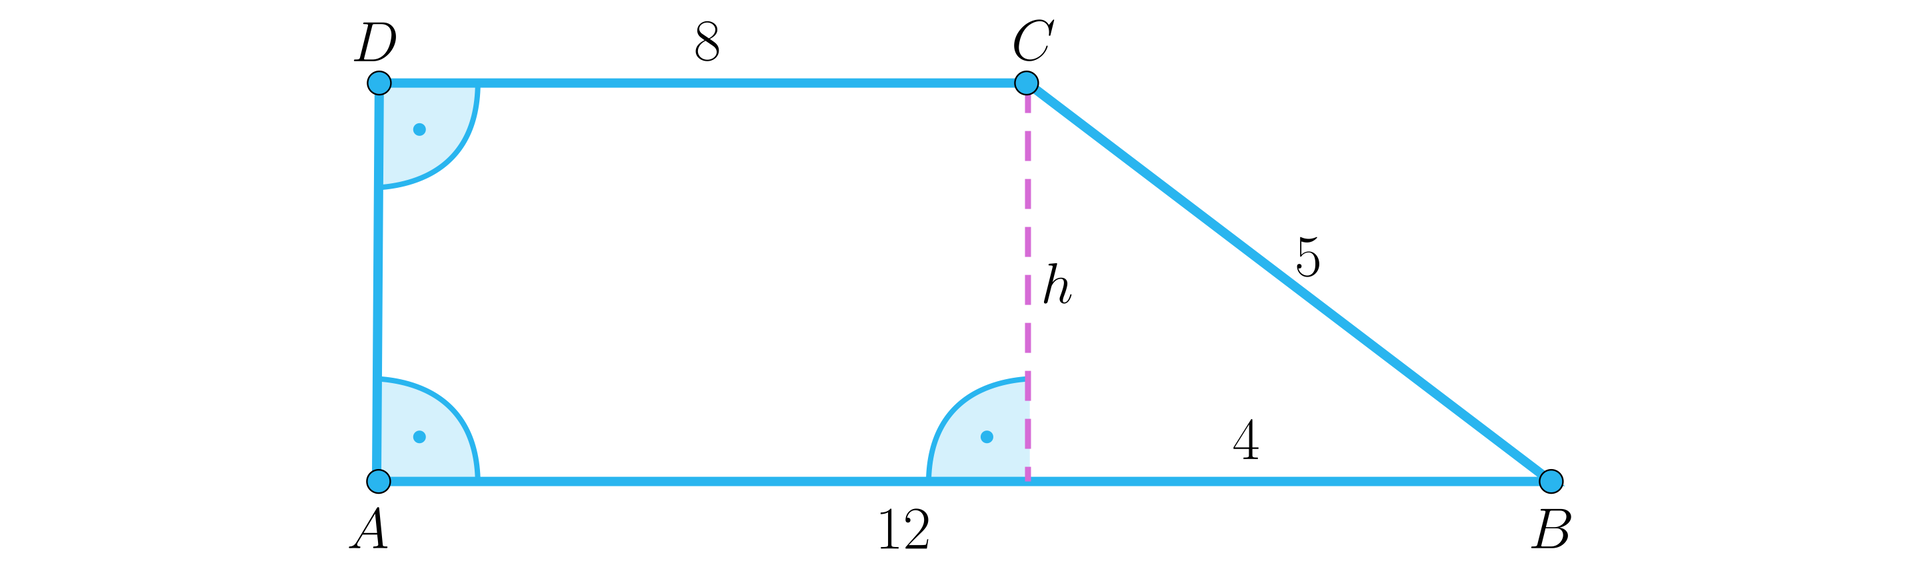 Ilustracja przedstawia trapez o wierzchołkach A B C D przy czym kąt D A B jest kątem prostym, a kąt A D C również jest kątem prostym. Dłuższa podstawa A B ma długość 12, krótsza podstawa ma długość 8, a ukośne ramię na długość pięć. W trapezie zaznaczono wysokość h, którą opuszczono z wierzchołka C na podstawę AB. Odcinek AB, znajdujący się pomiędzy wysokością a wierzchołkiem B ma długość cztery.